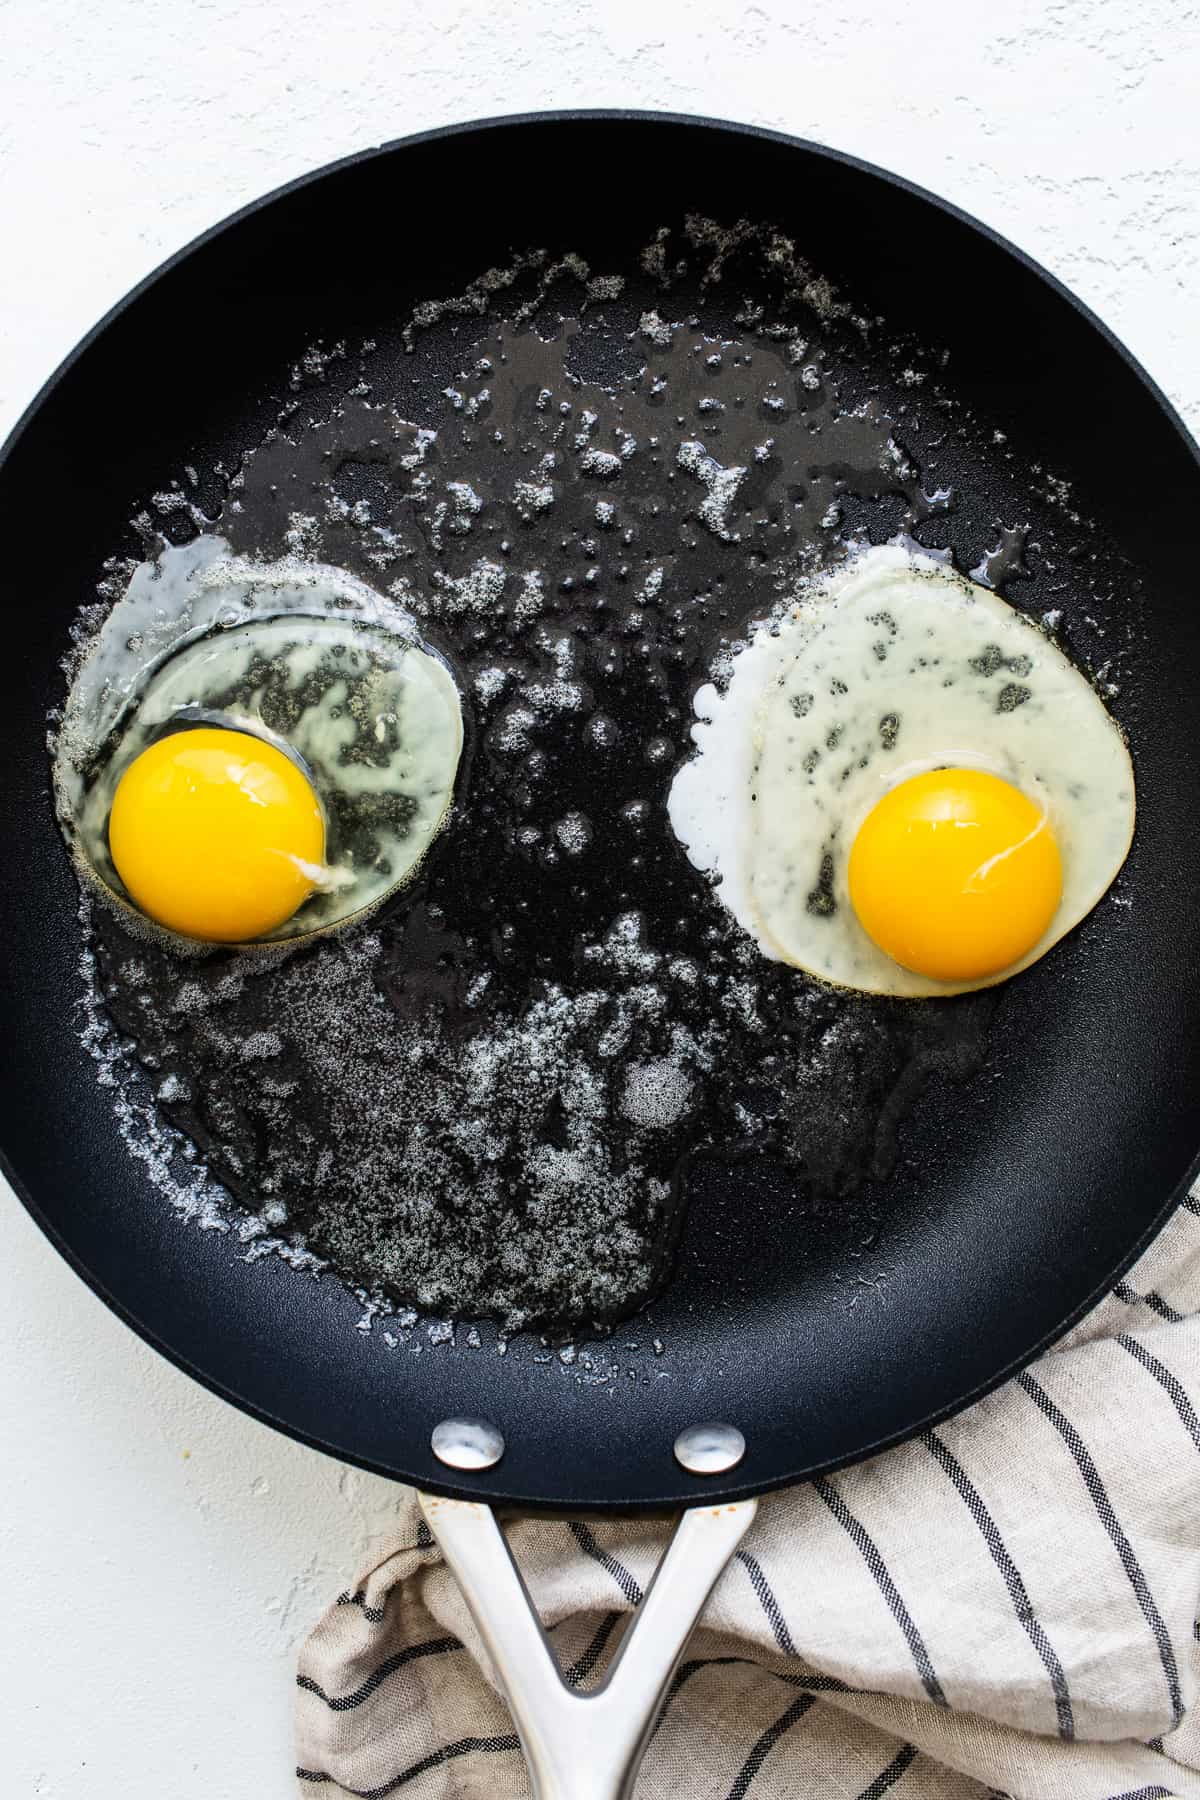 پختن تخم مرغ در تابه.